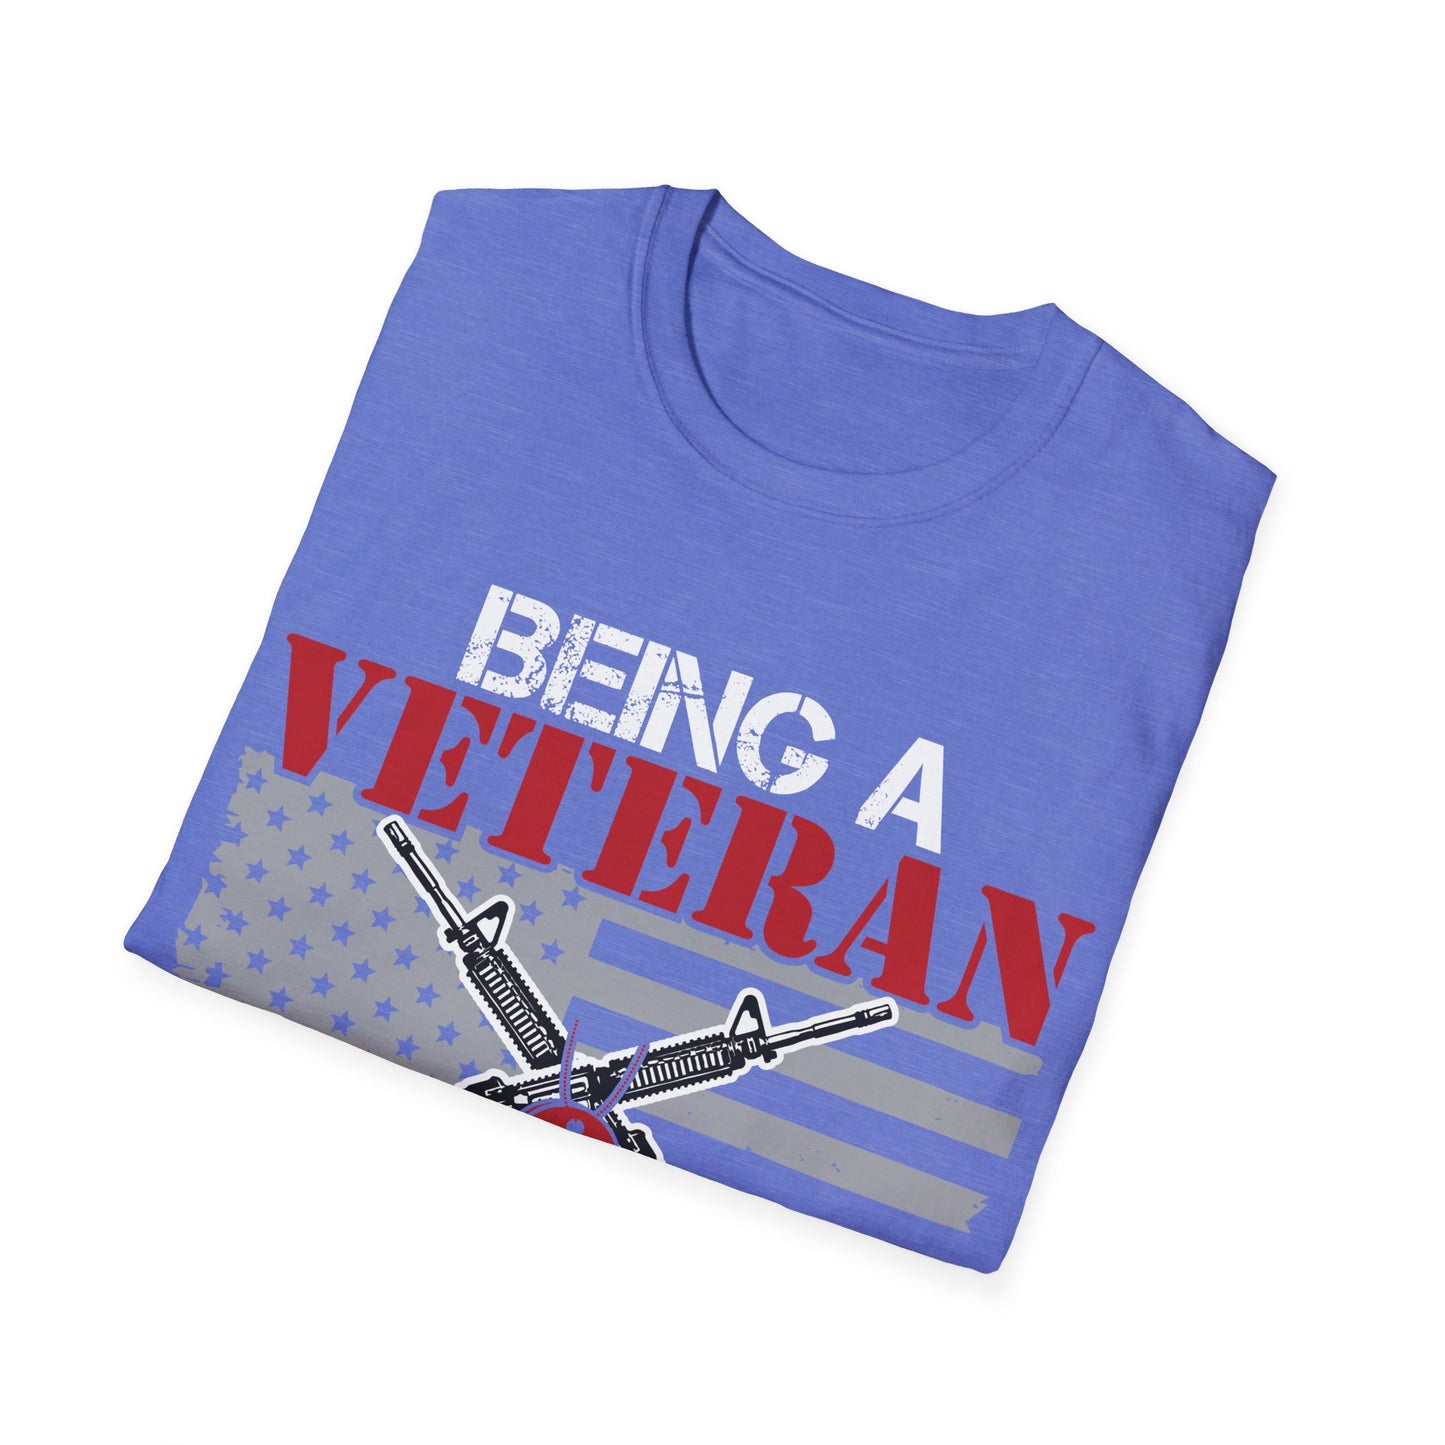 Veteran - Grandpa Priceless - Unisex Softstyle T-Shirt